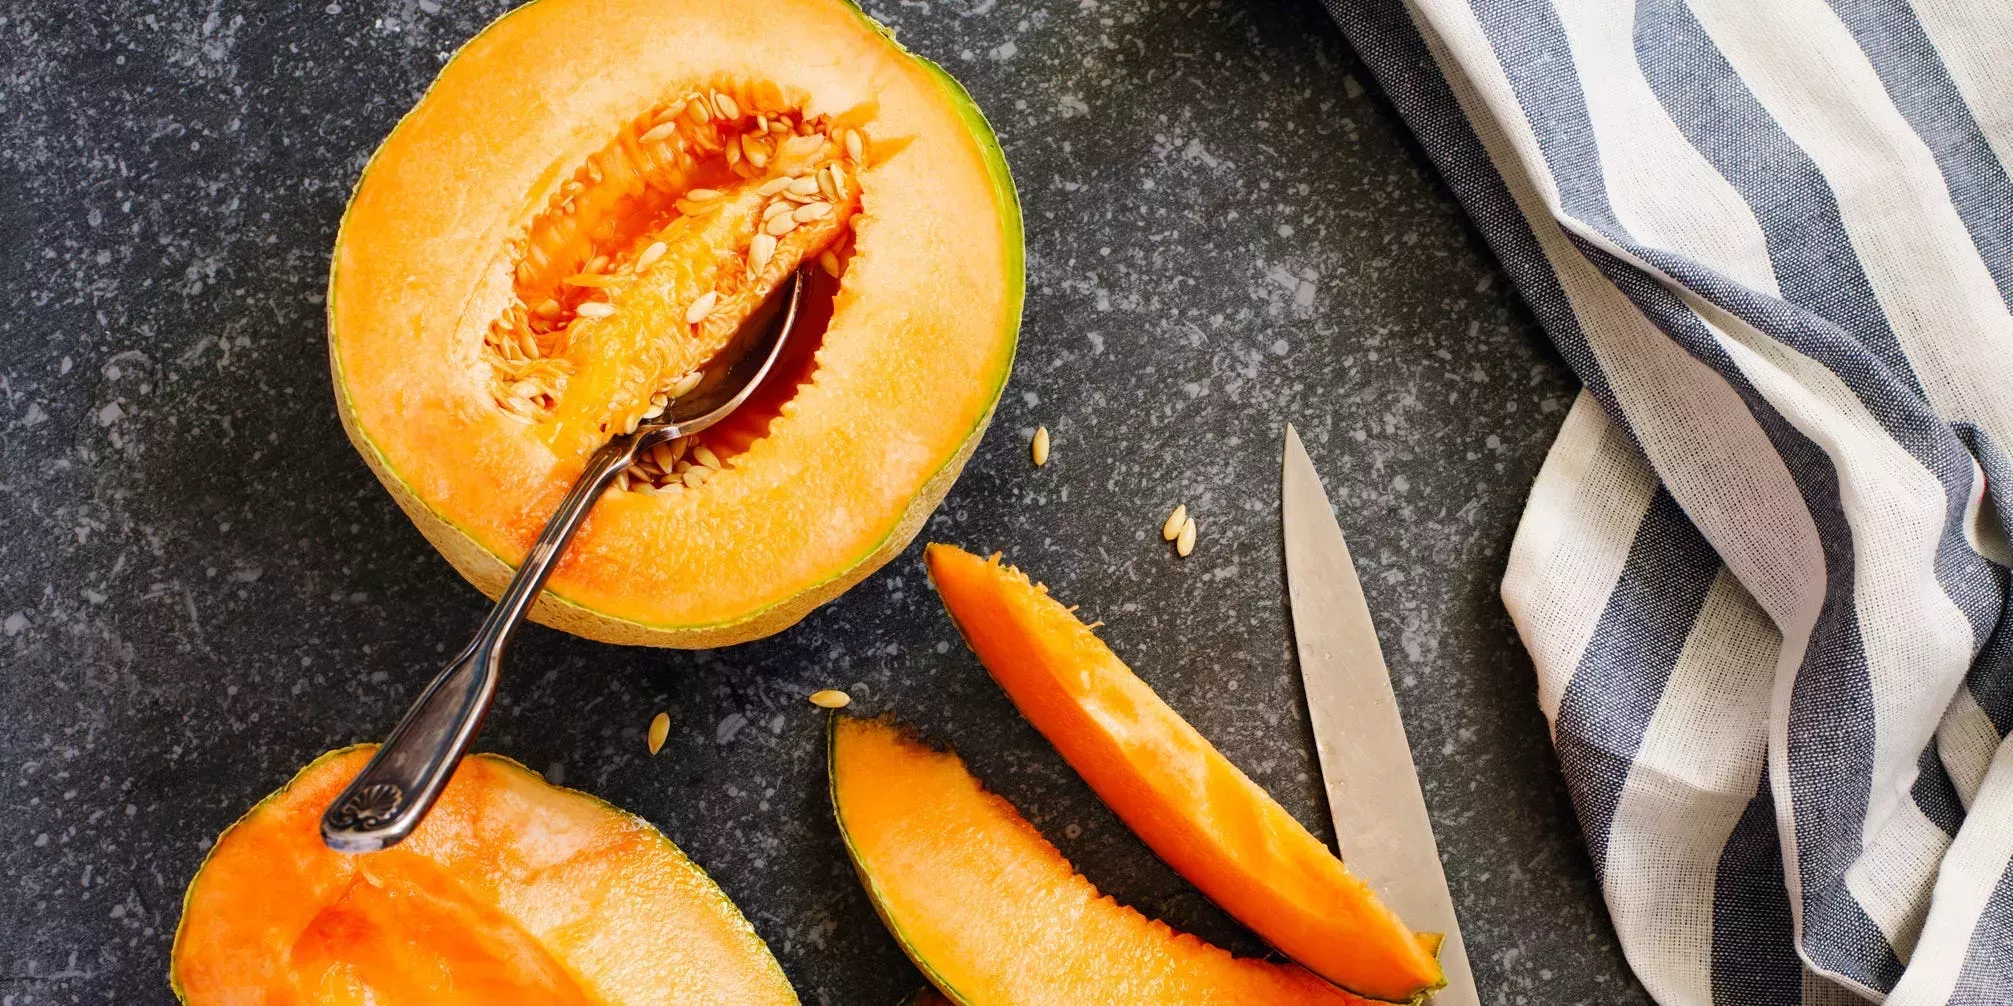 Cómo cortar un melón cantalupo de 3 maneras, además de sugerencias para servirlo